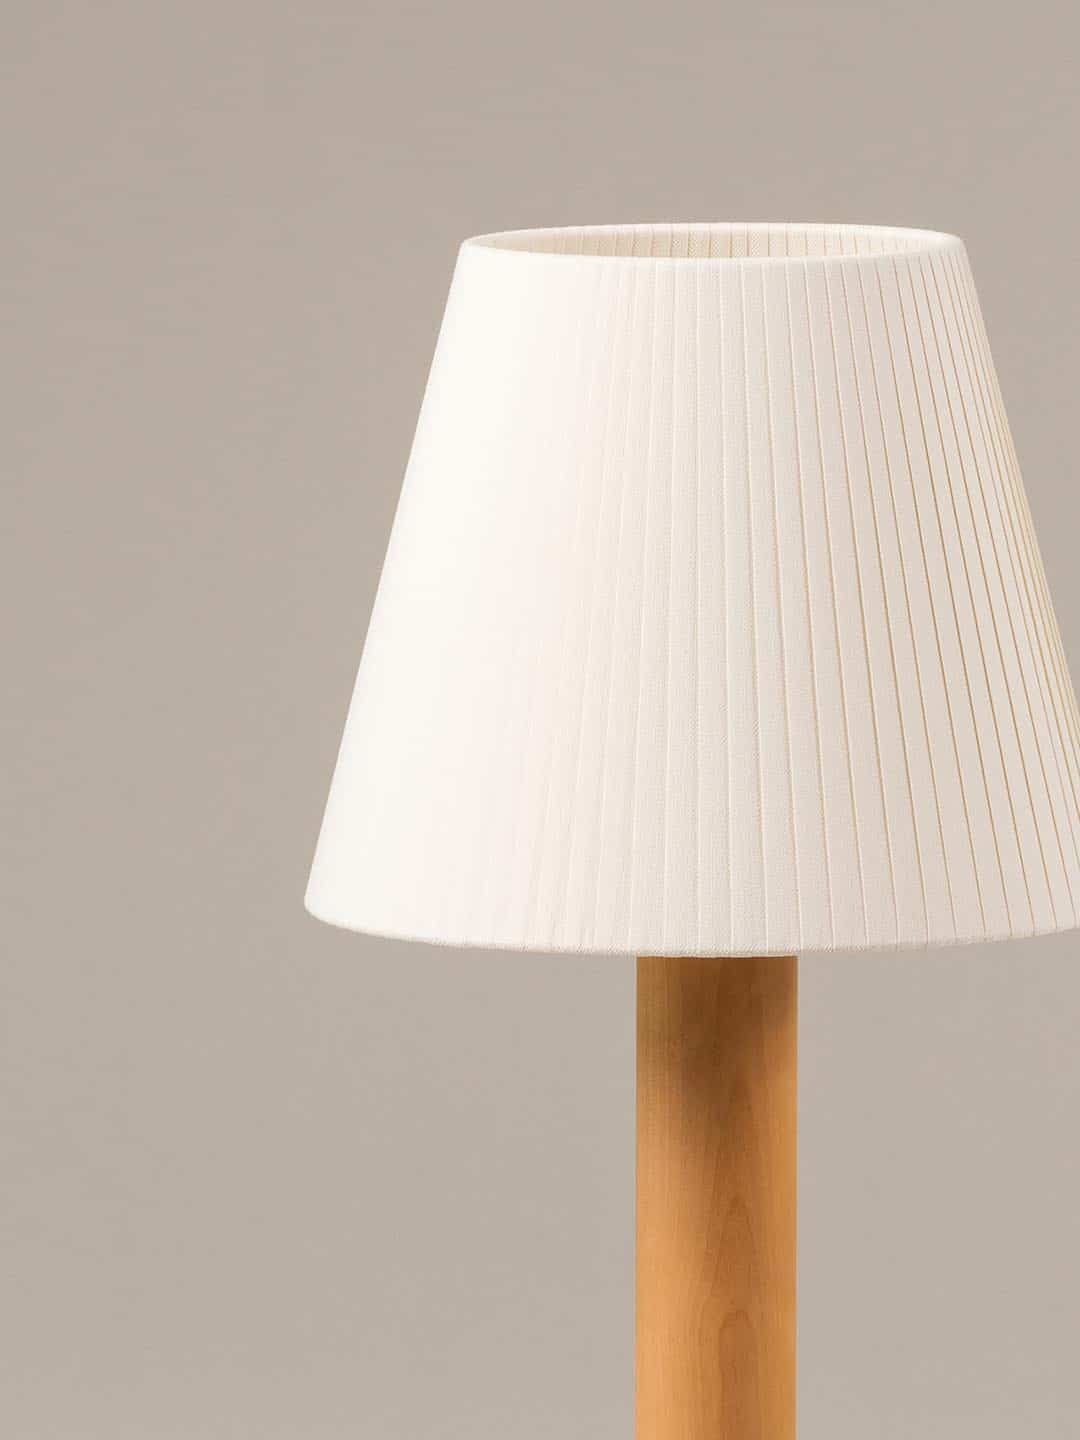 Настольная лампа Santa Cole Basica M1 в скандинавском стиле из белой ленты